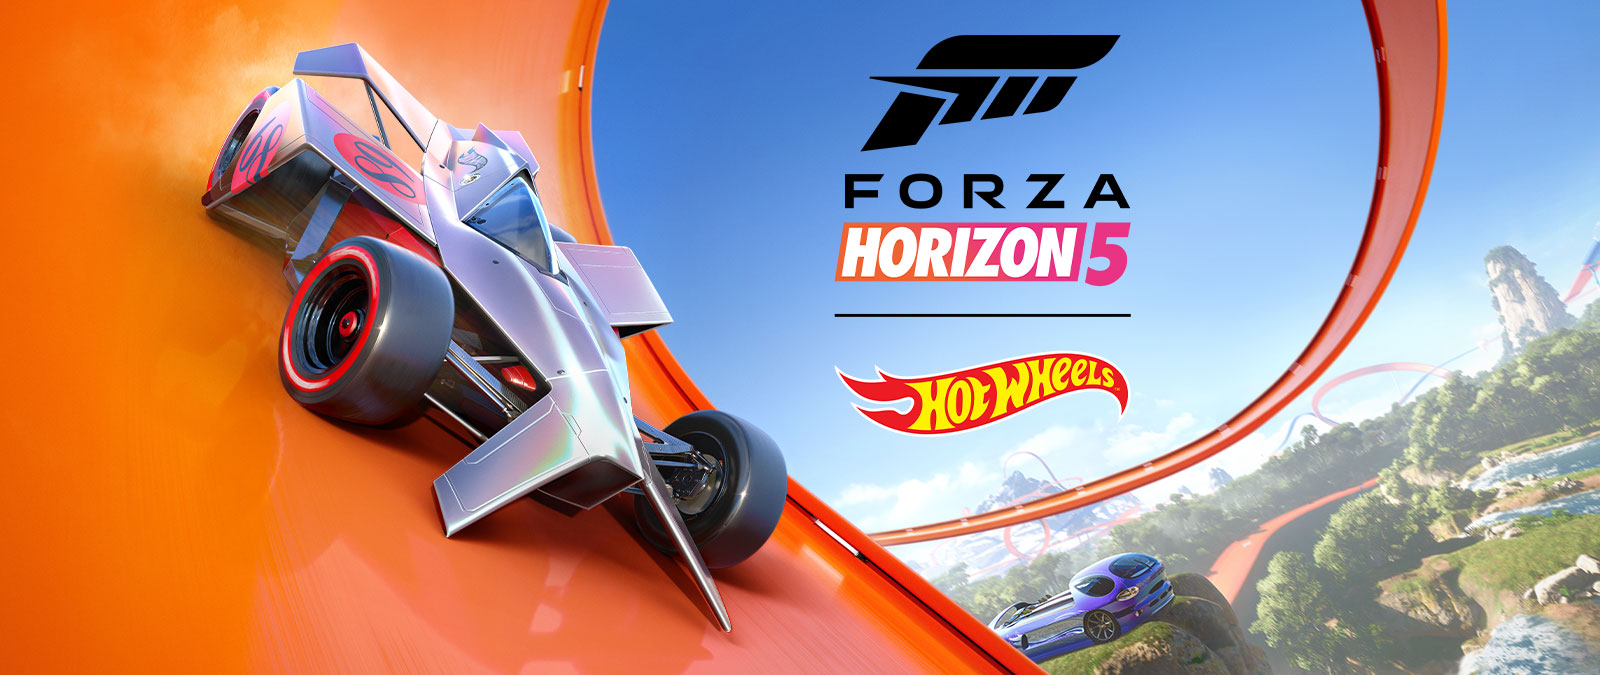 Forza Horizon 5, Hot Wheels, ein Auto rast um einen Hot Wheels-Looping.